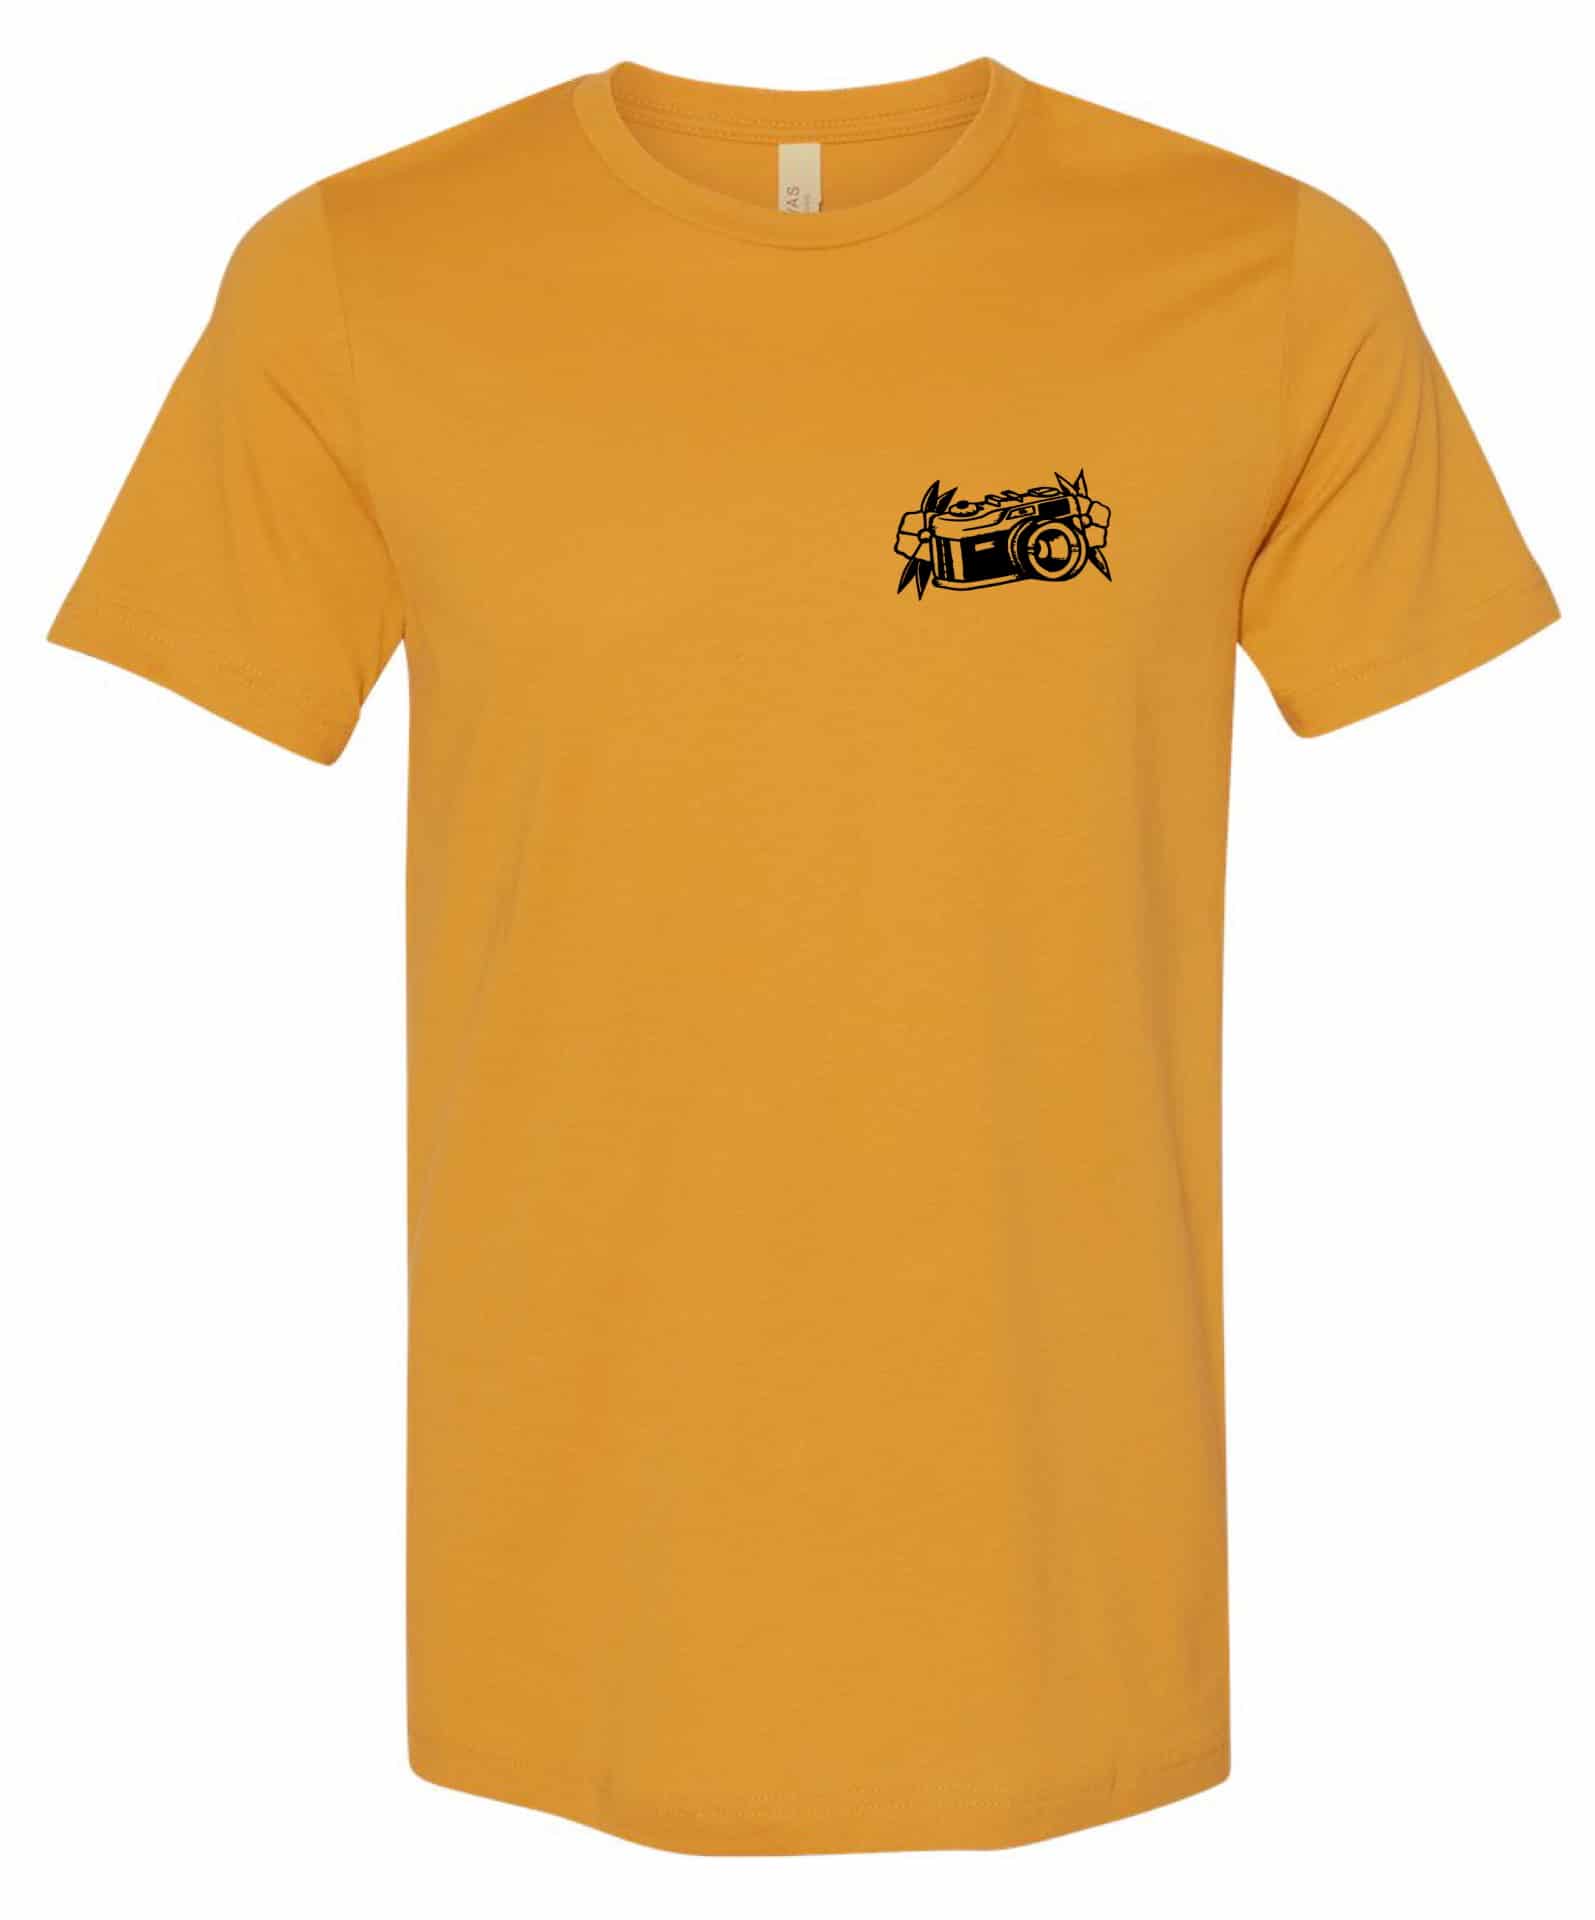 CMM tour shirt mustard